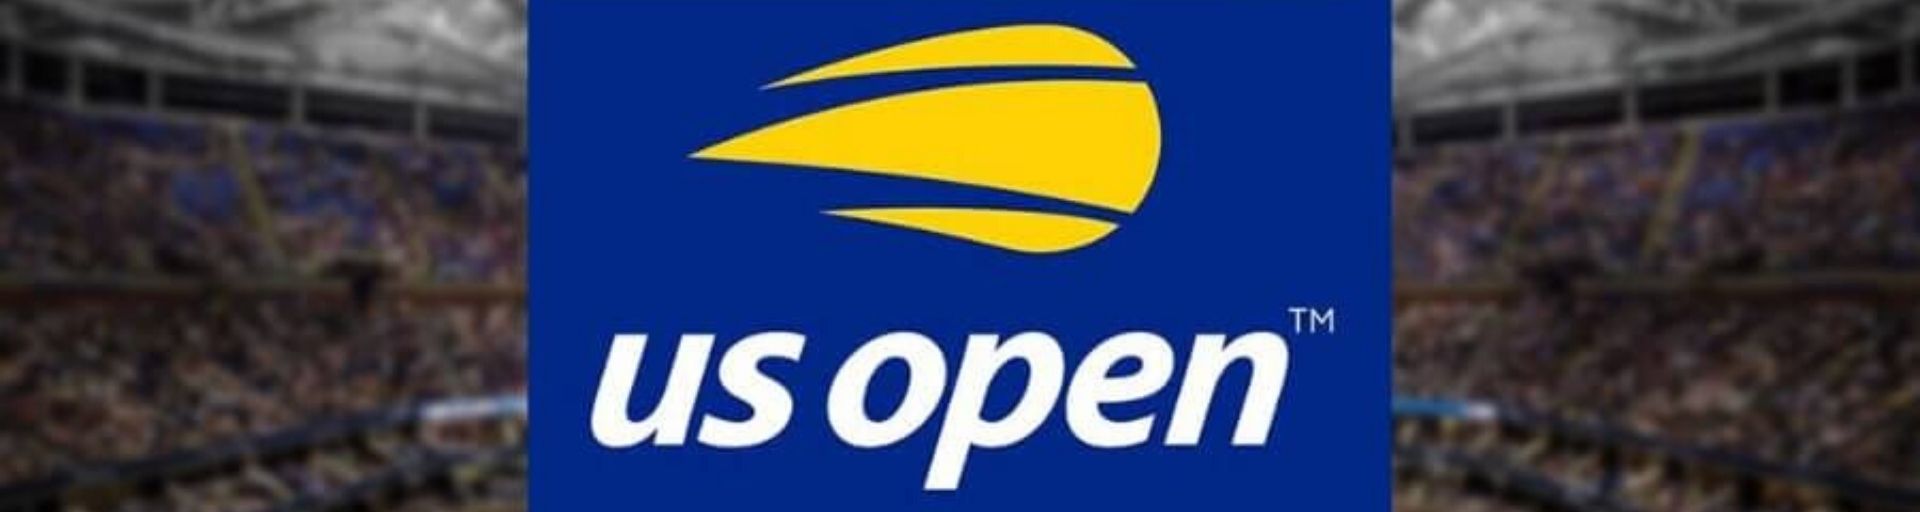 US Open 2021: дата, расписание, турнирная сетка